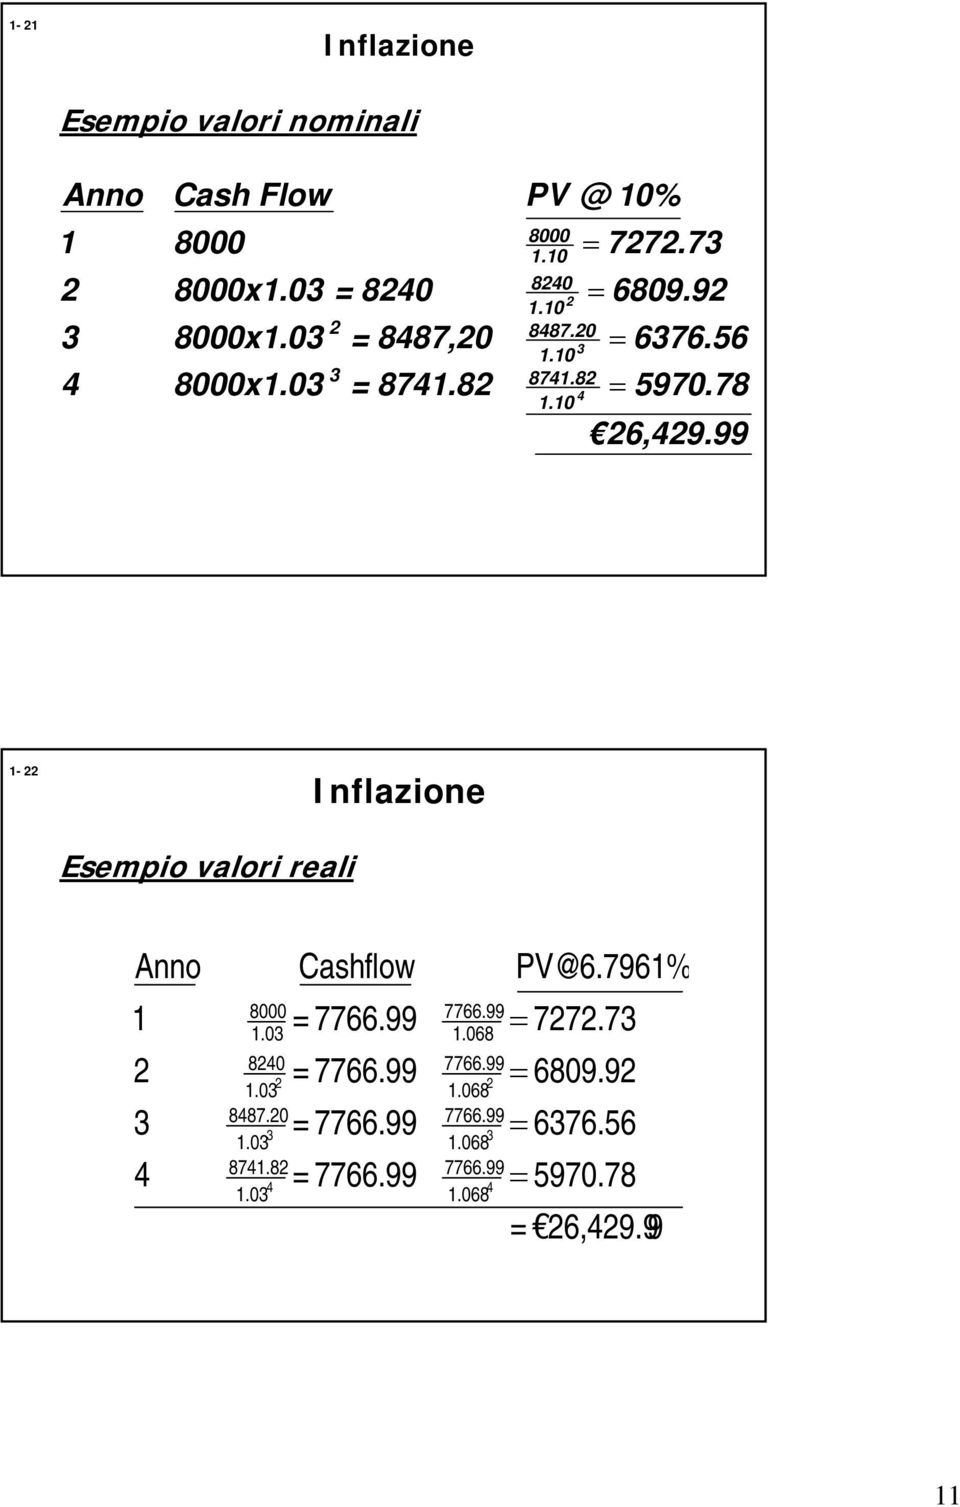 99 1- Inflazione Esempio valori reali Anno 1 4 8000 1.0 840 1.0 8487.0 1.0 8741.8 4 1.0 Cashflow = 7766.99 = 7766.